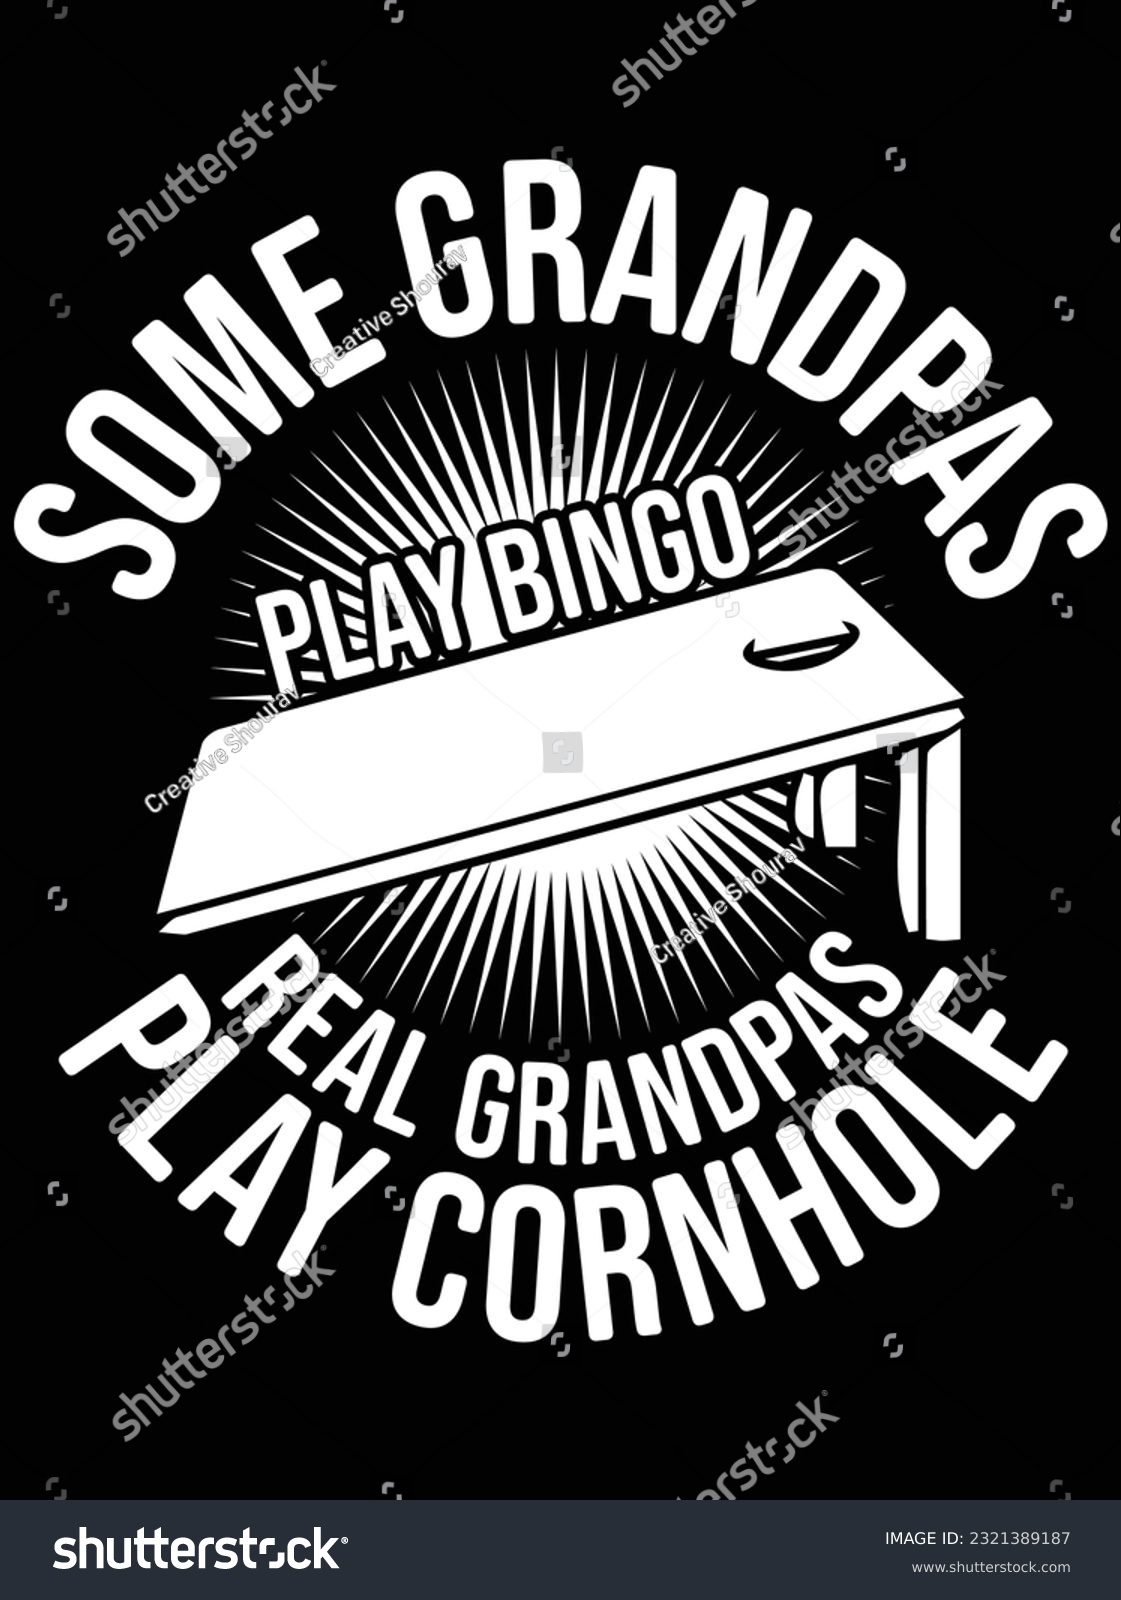 SVG of Some grandpas play bongo real grandpas vector art design, eps file. design file for t-shirt. SVG, EPS cuttable design file svg